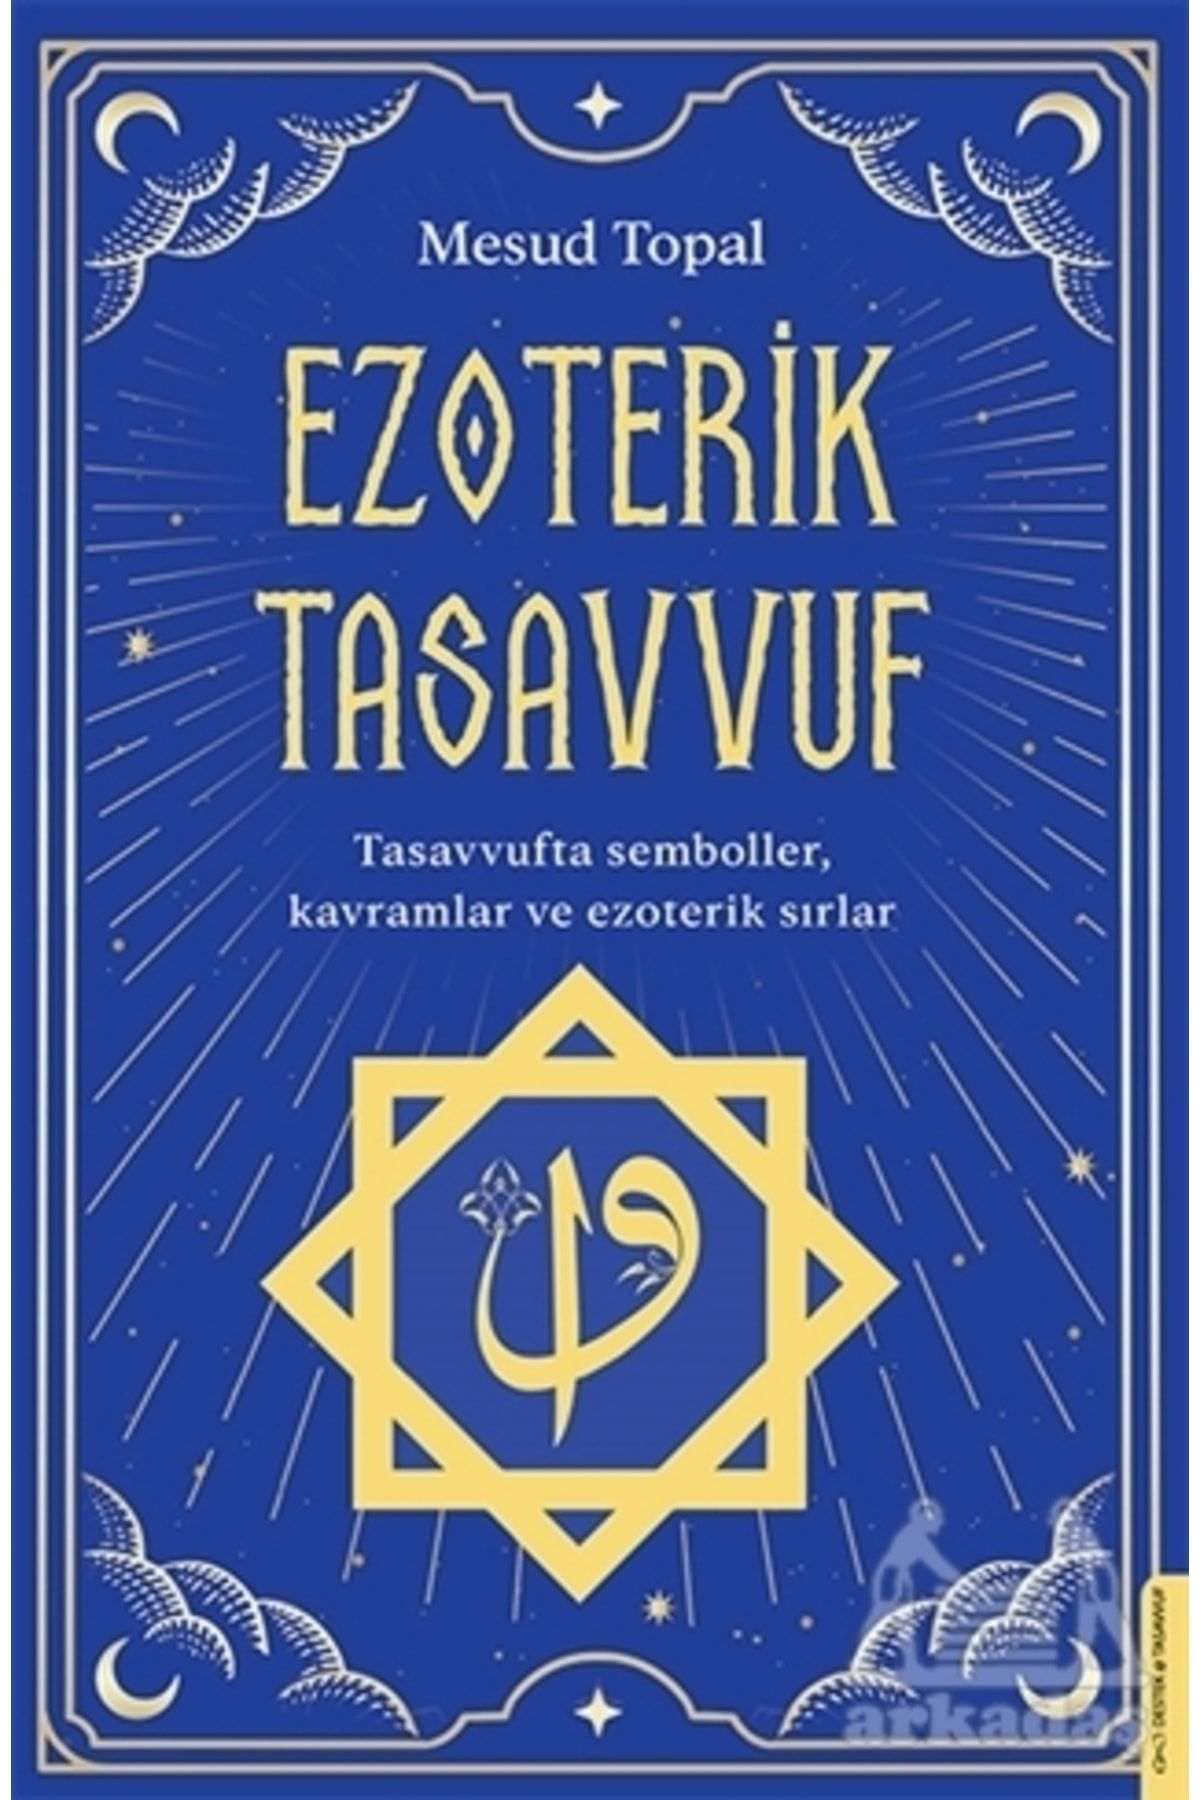 Destek Yayınları Ezoterik Tasavvuf